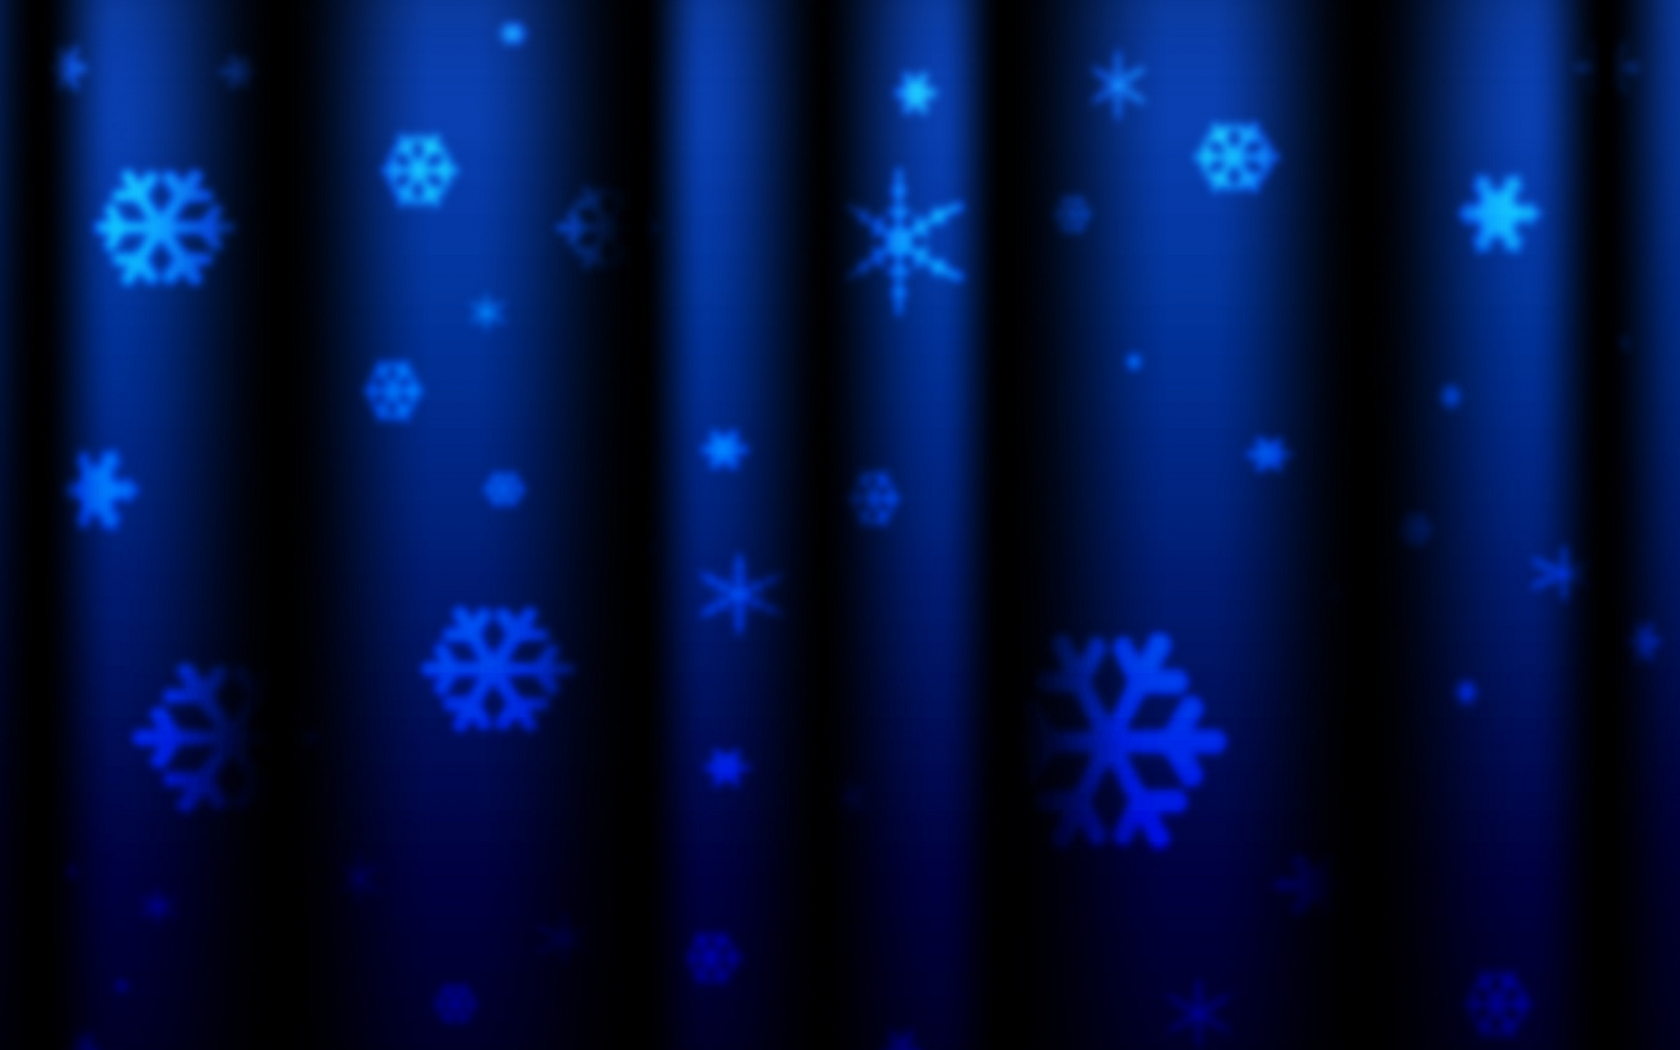 текстуры, фото, синий, новогодние, обои для рабочего стола, фон, текстура, шторы, новый год, снежинки